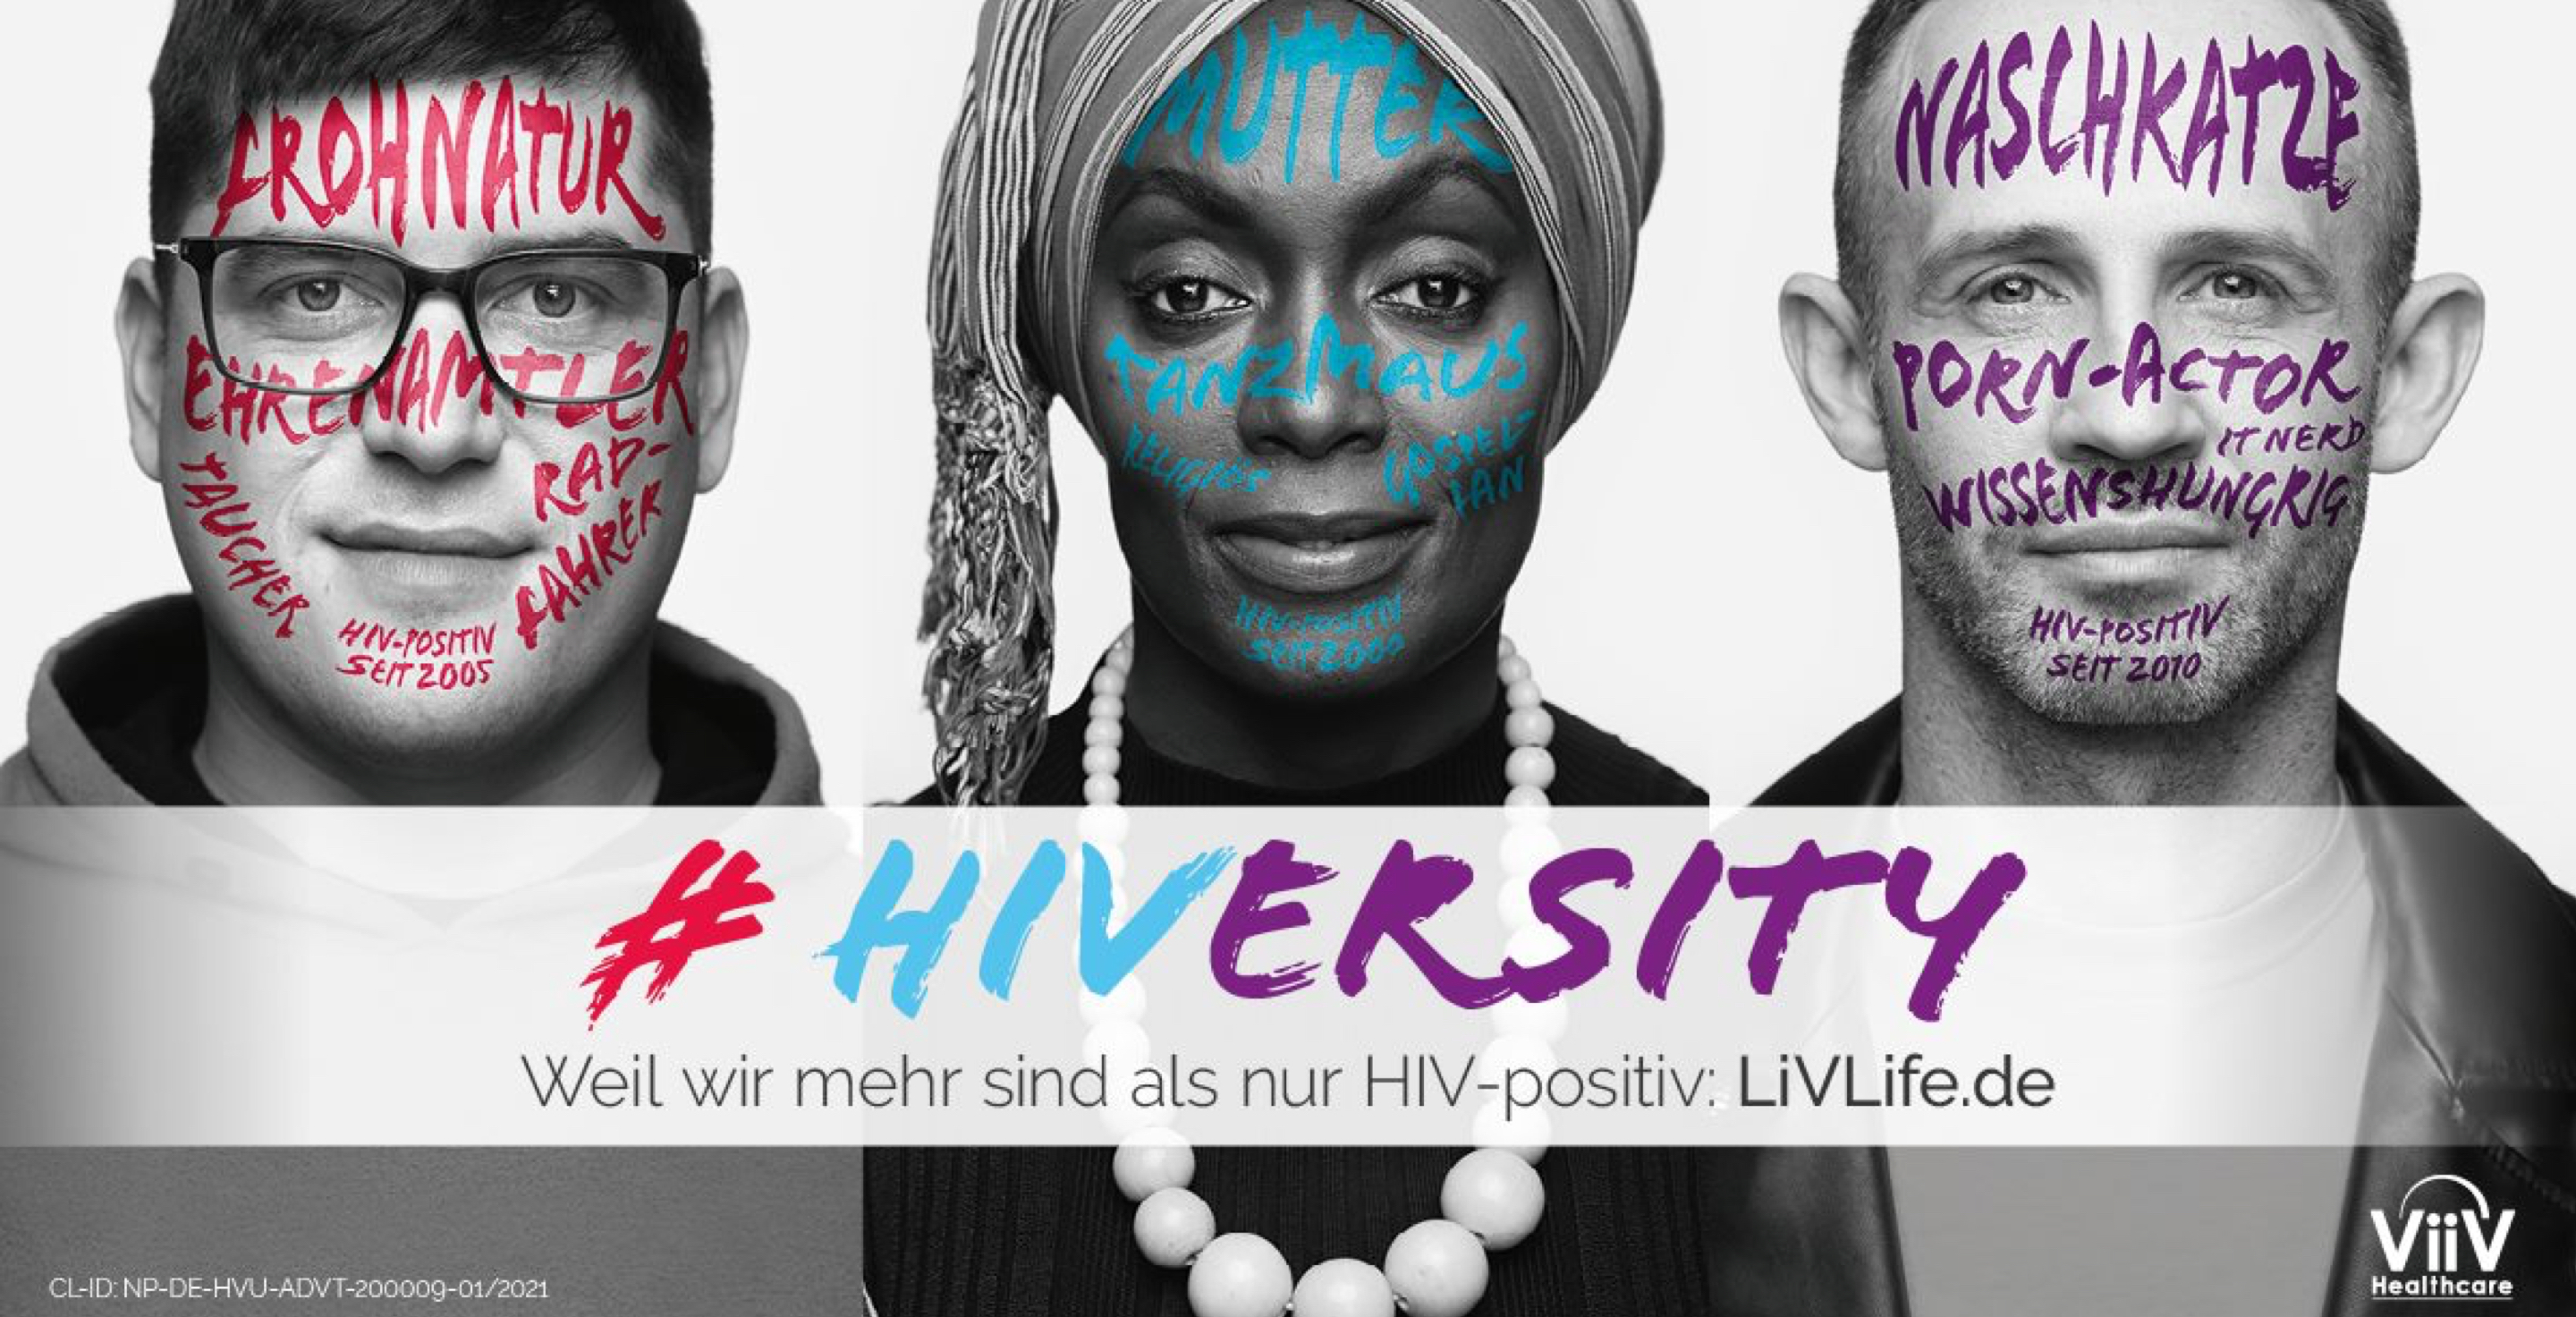 Kampagnenmotiv HIVersity zeigt Portraitbilder von allen sechs Protagonisten mit ihren persönlichen Botschaften